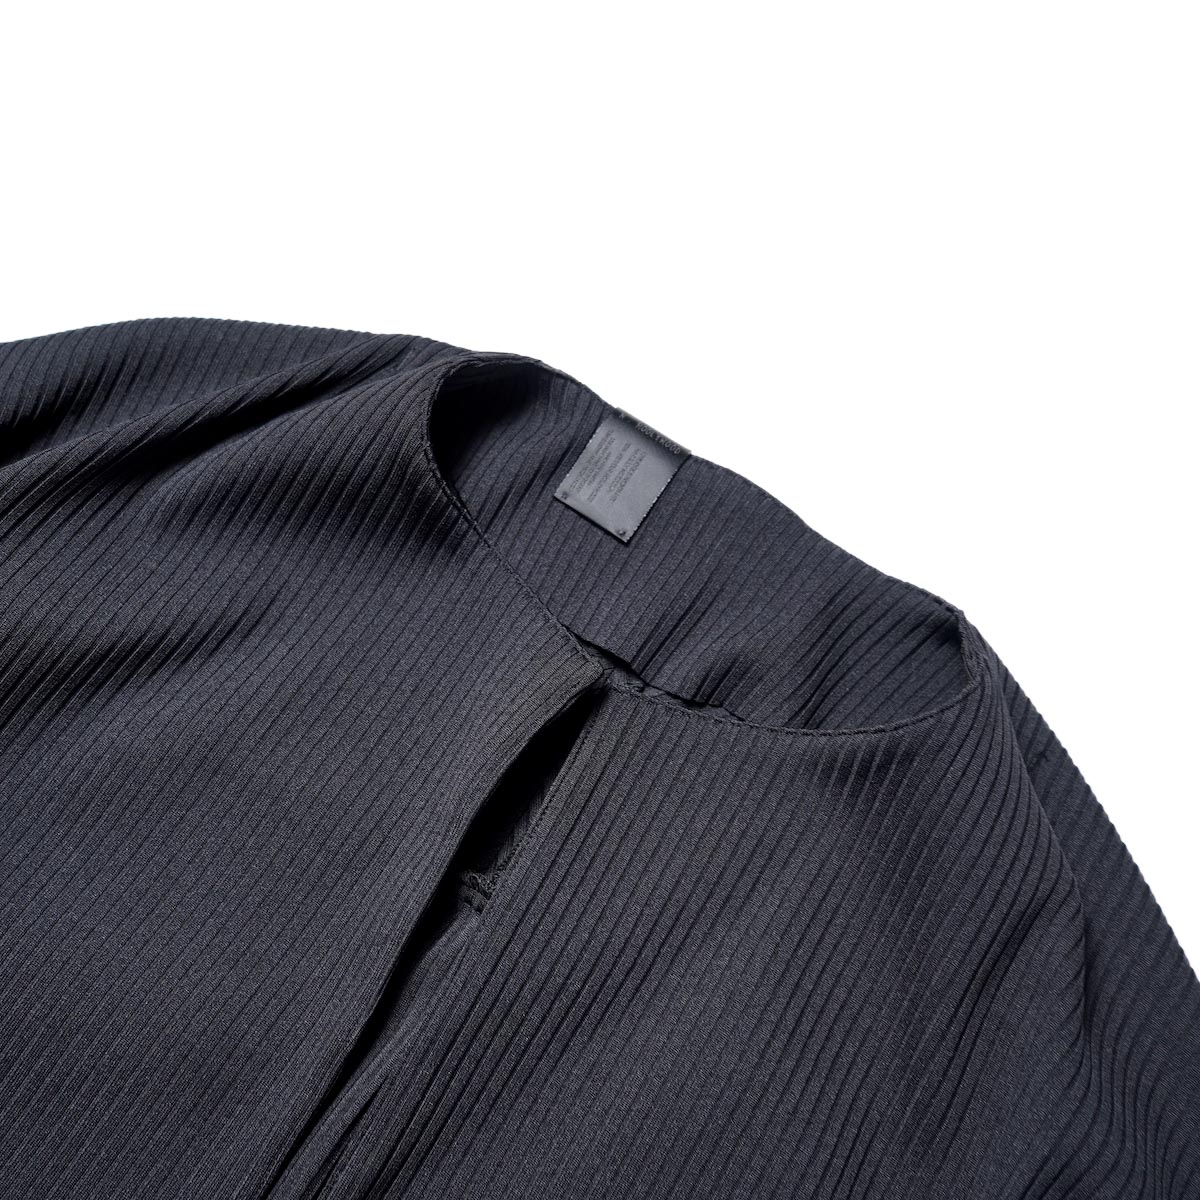 N.HOOLYWOOD COMPILE / 2231-SH20-060 peg Shirt (Black)ノーカラー